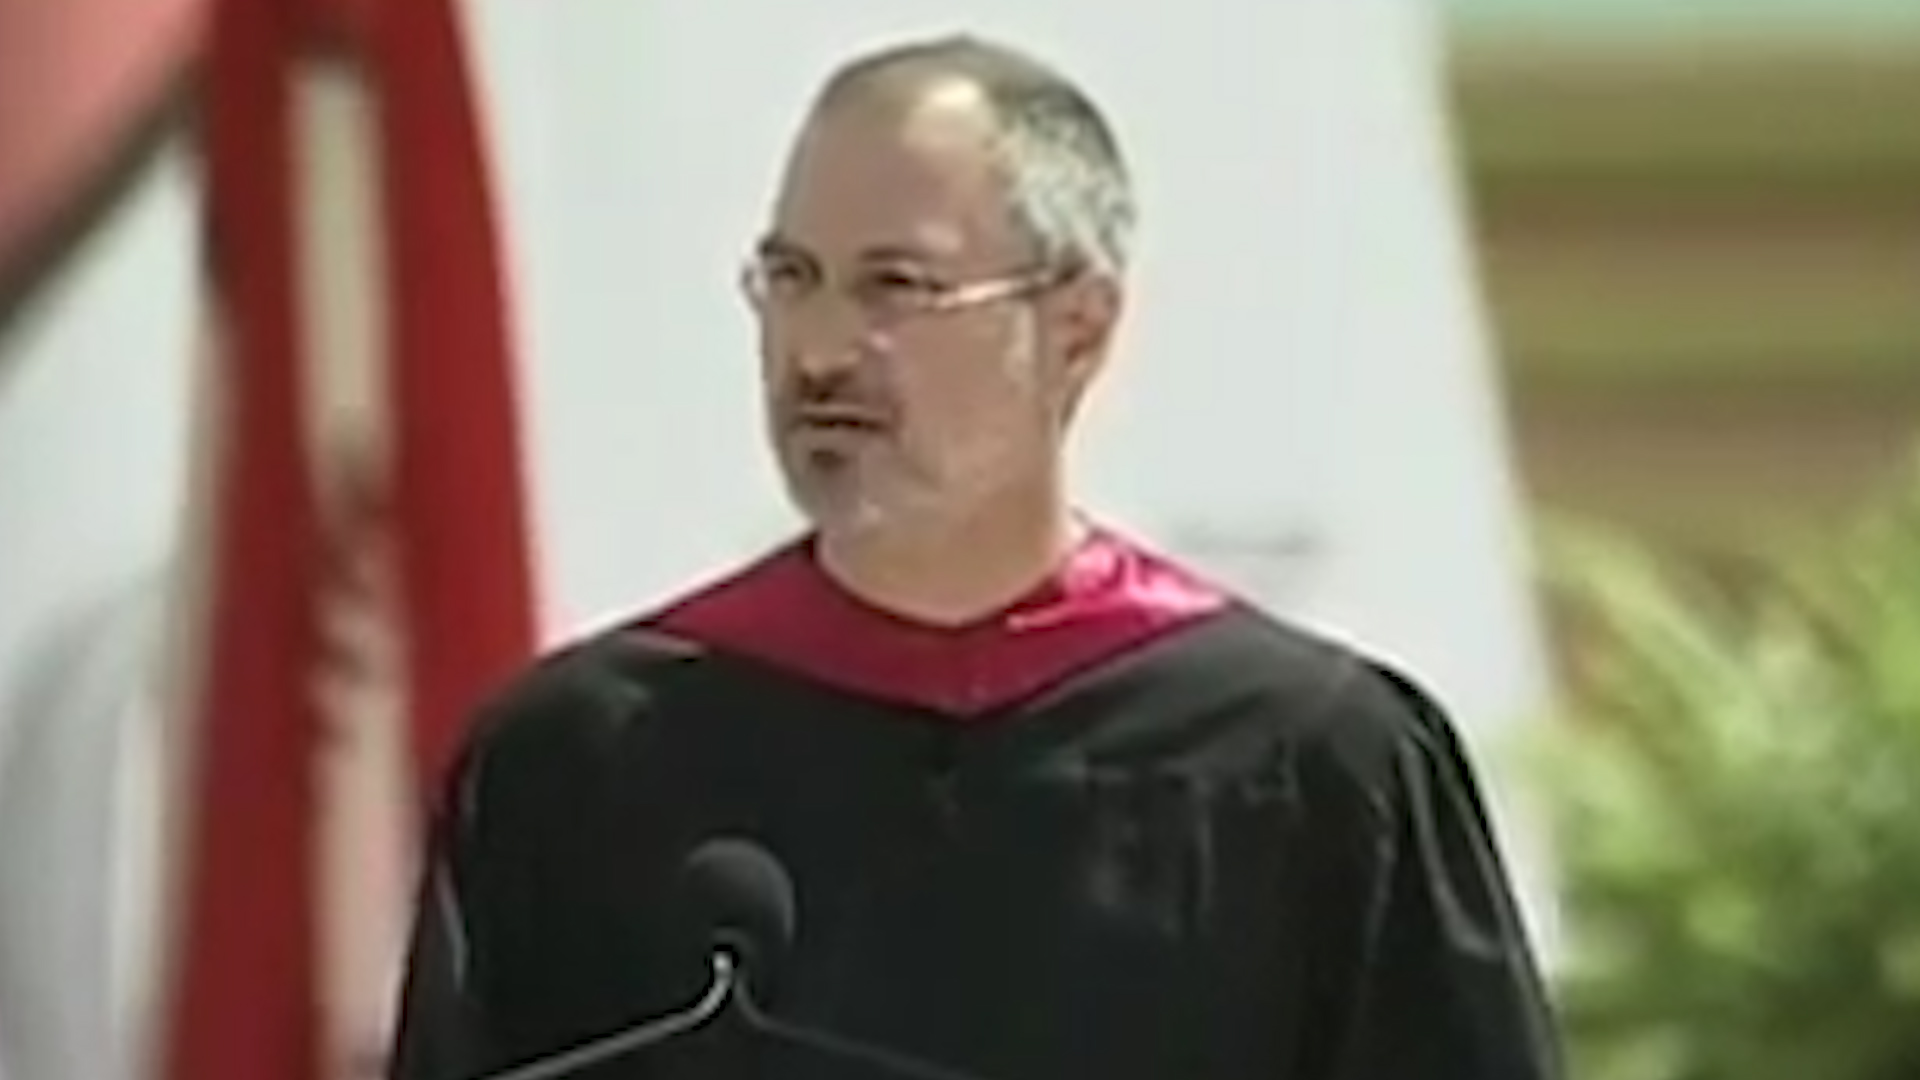 El fundador de Apple dio un recordado discurso ante los graduados de Stanford, en 2005